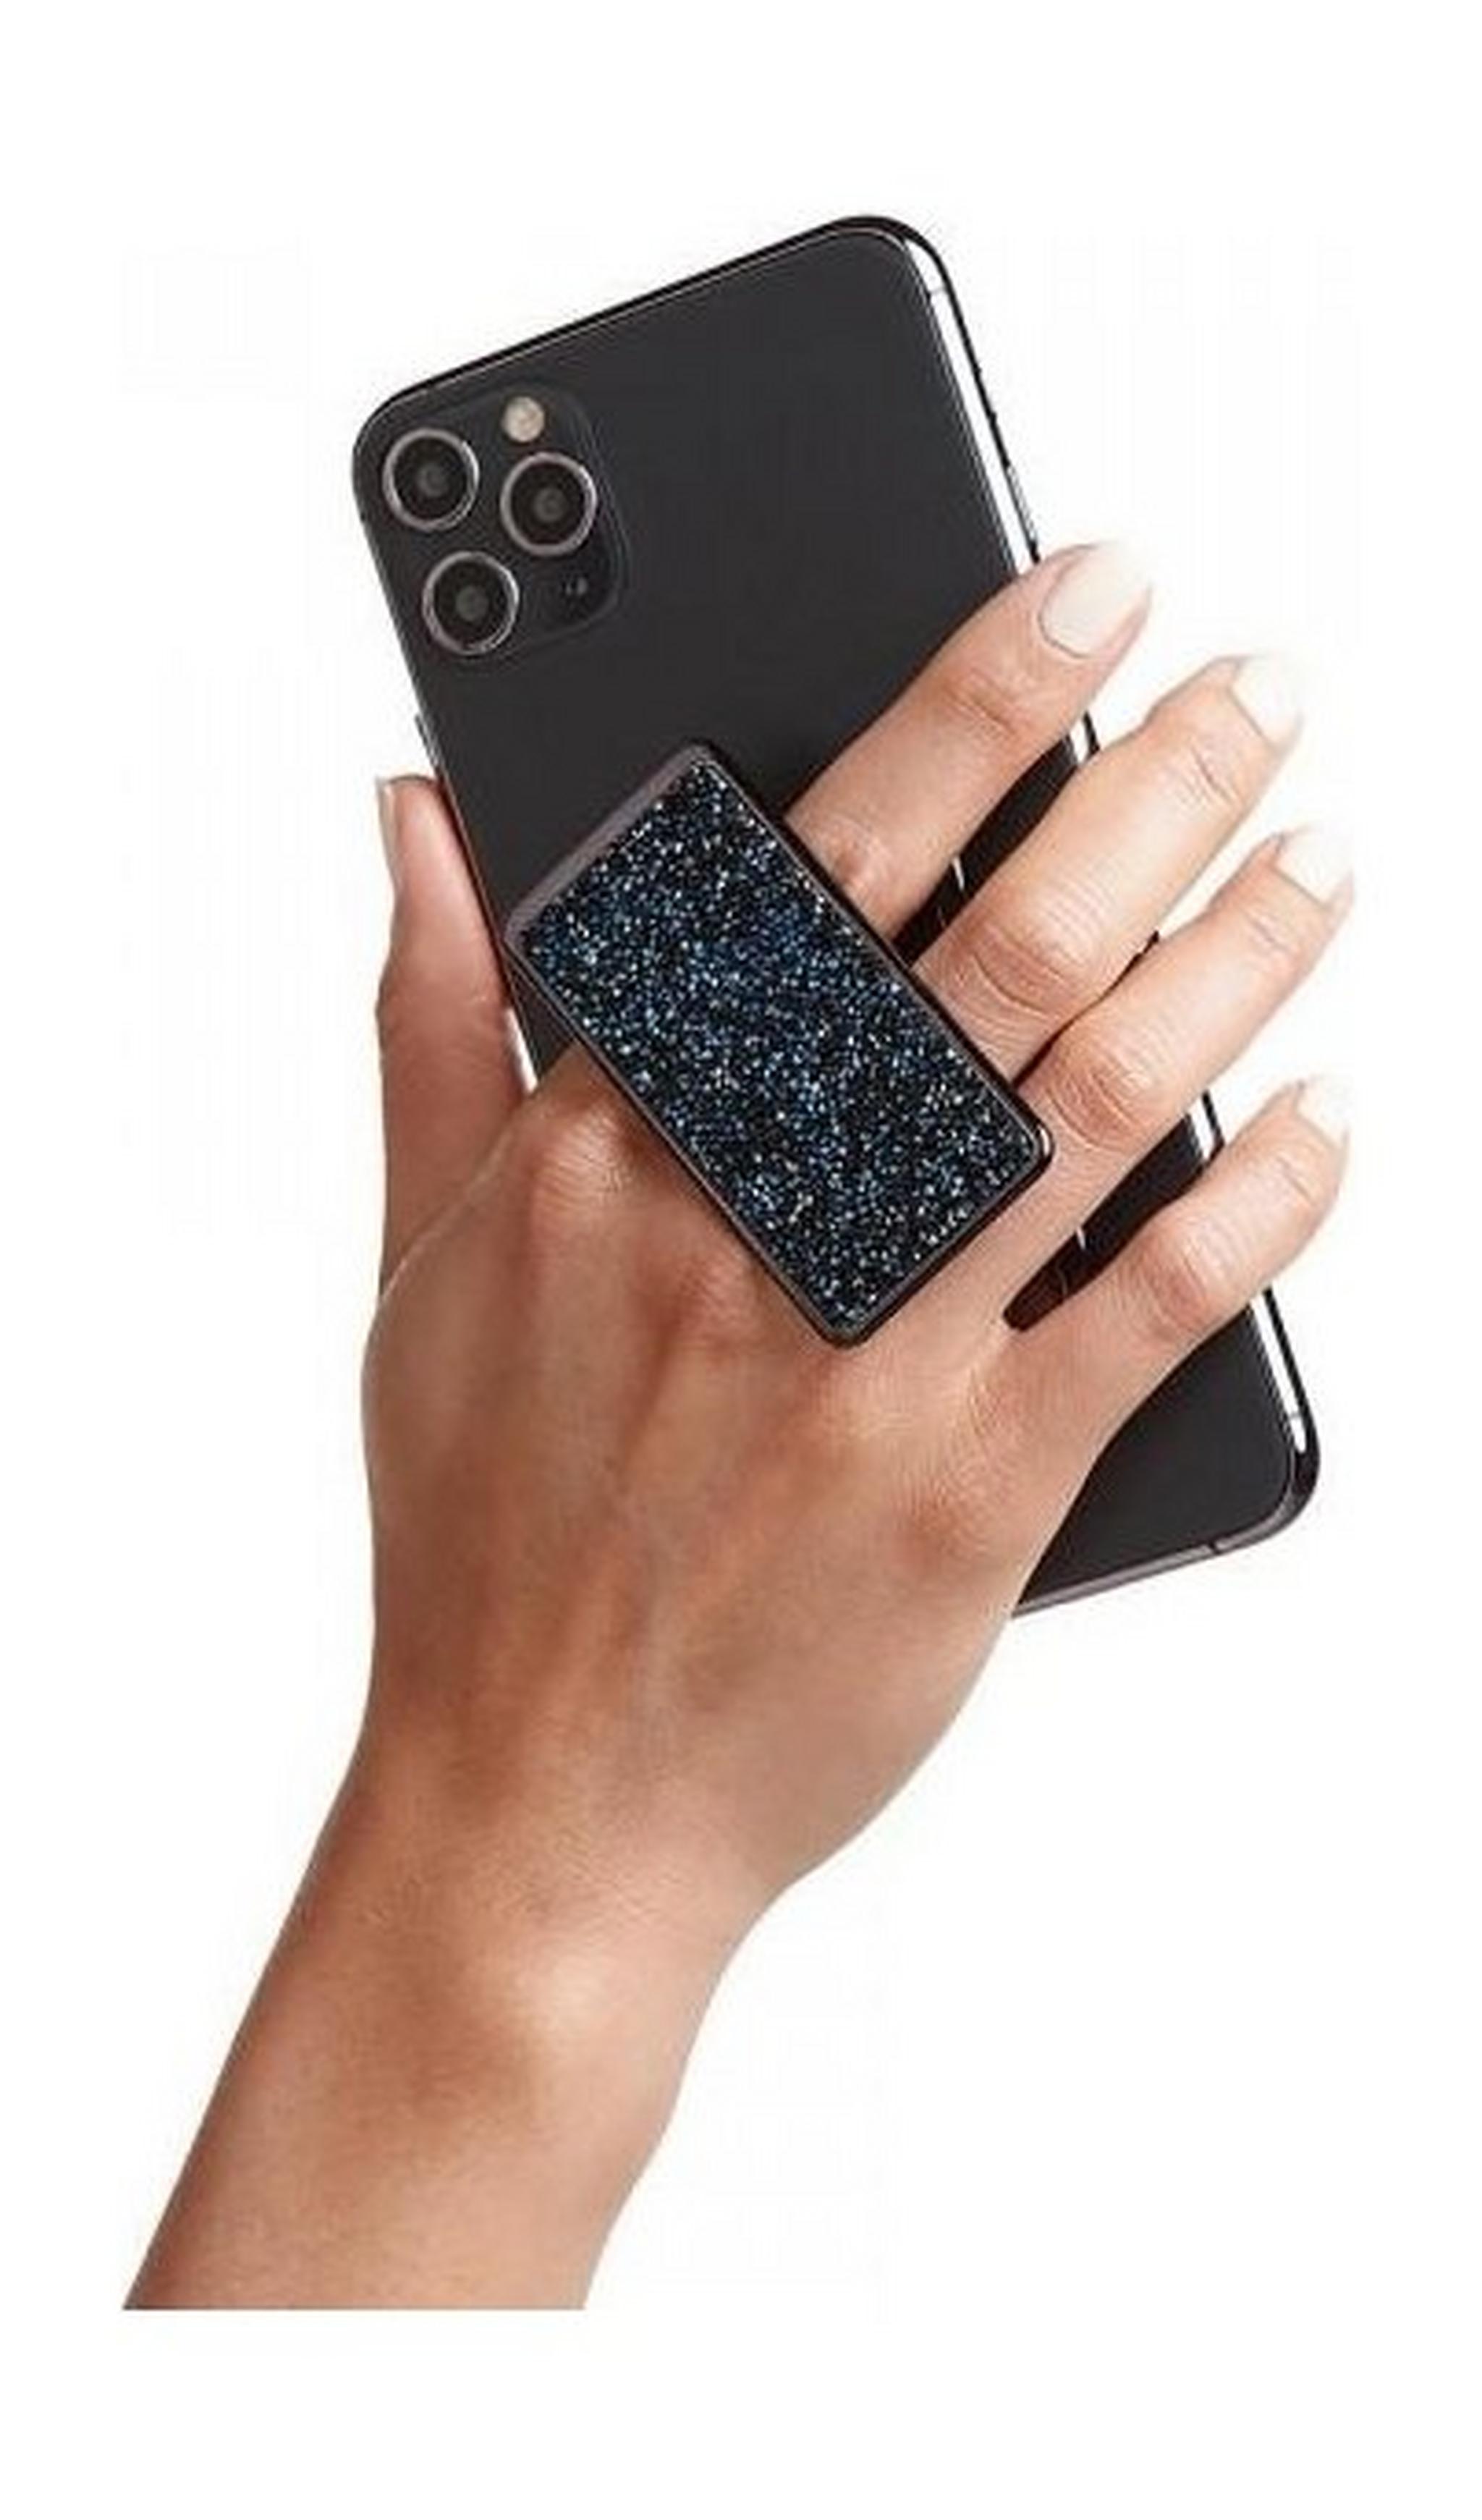 HANDLstick Crystal Smartphone Holder - Black/Blue